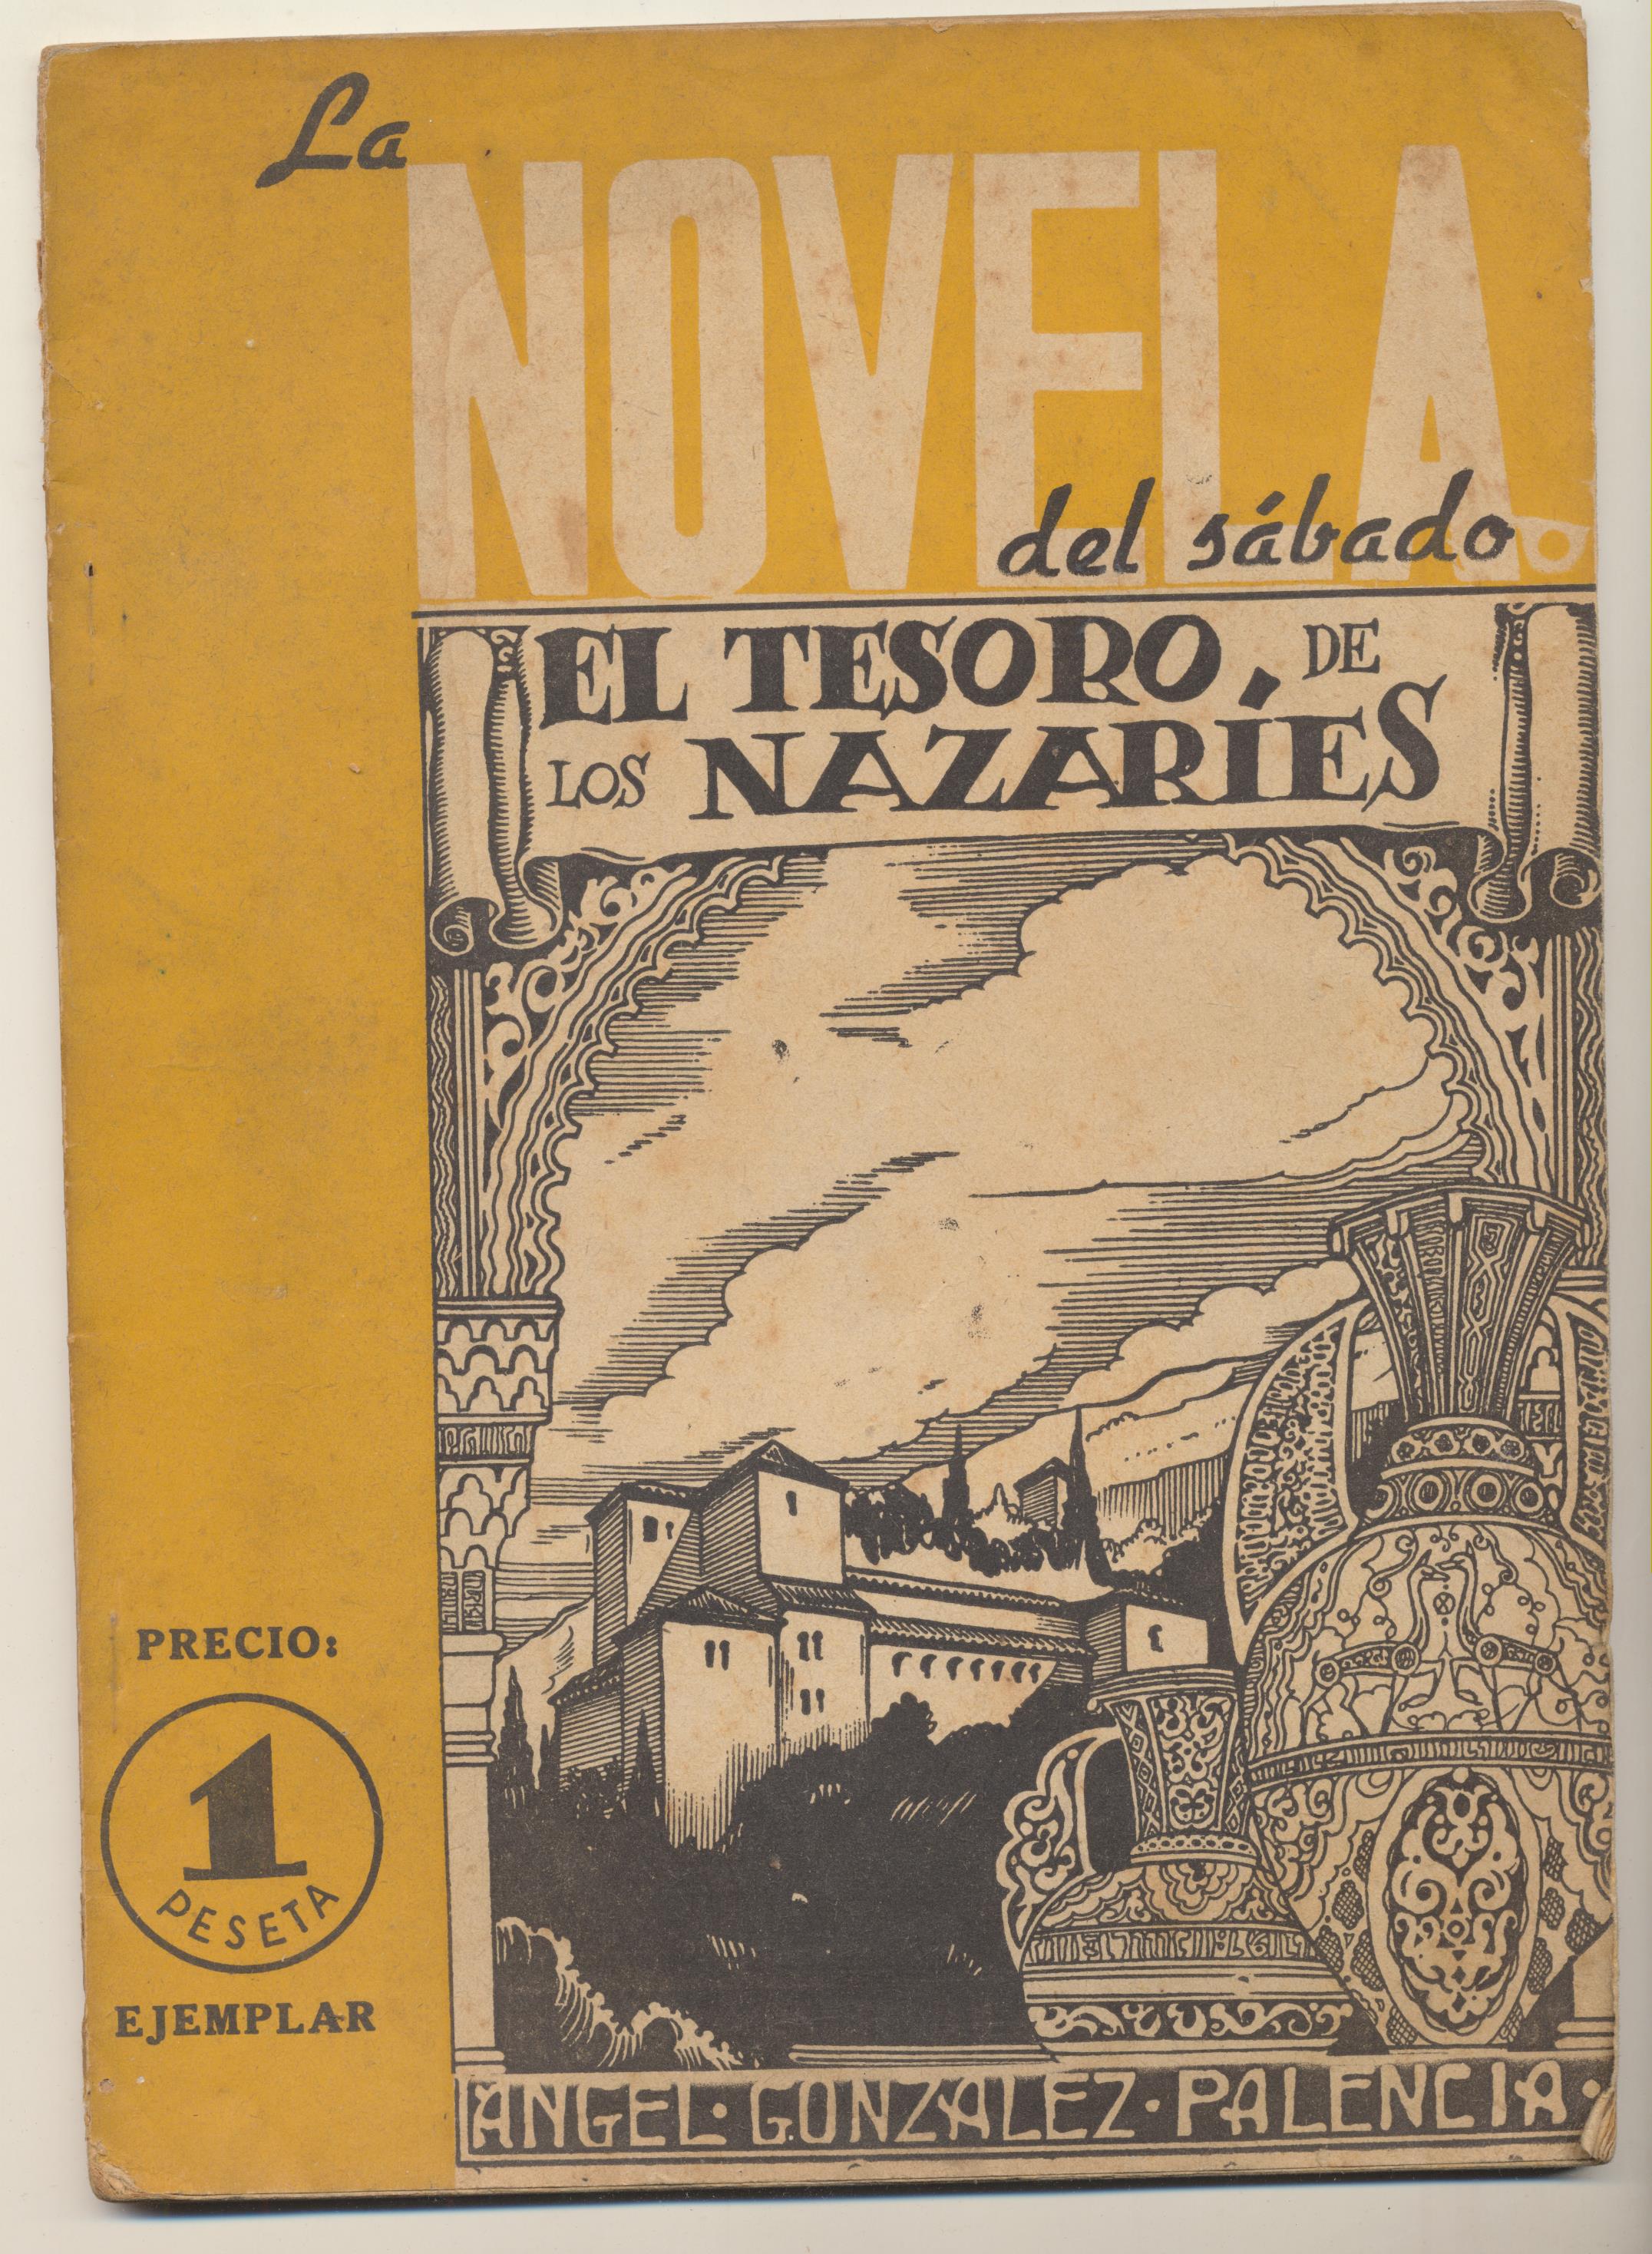 La Novela del Sábado. El Tesoro de los nazaríes por Ángel Gómez Palencia. Madrid 1940